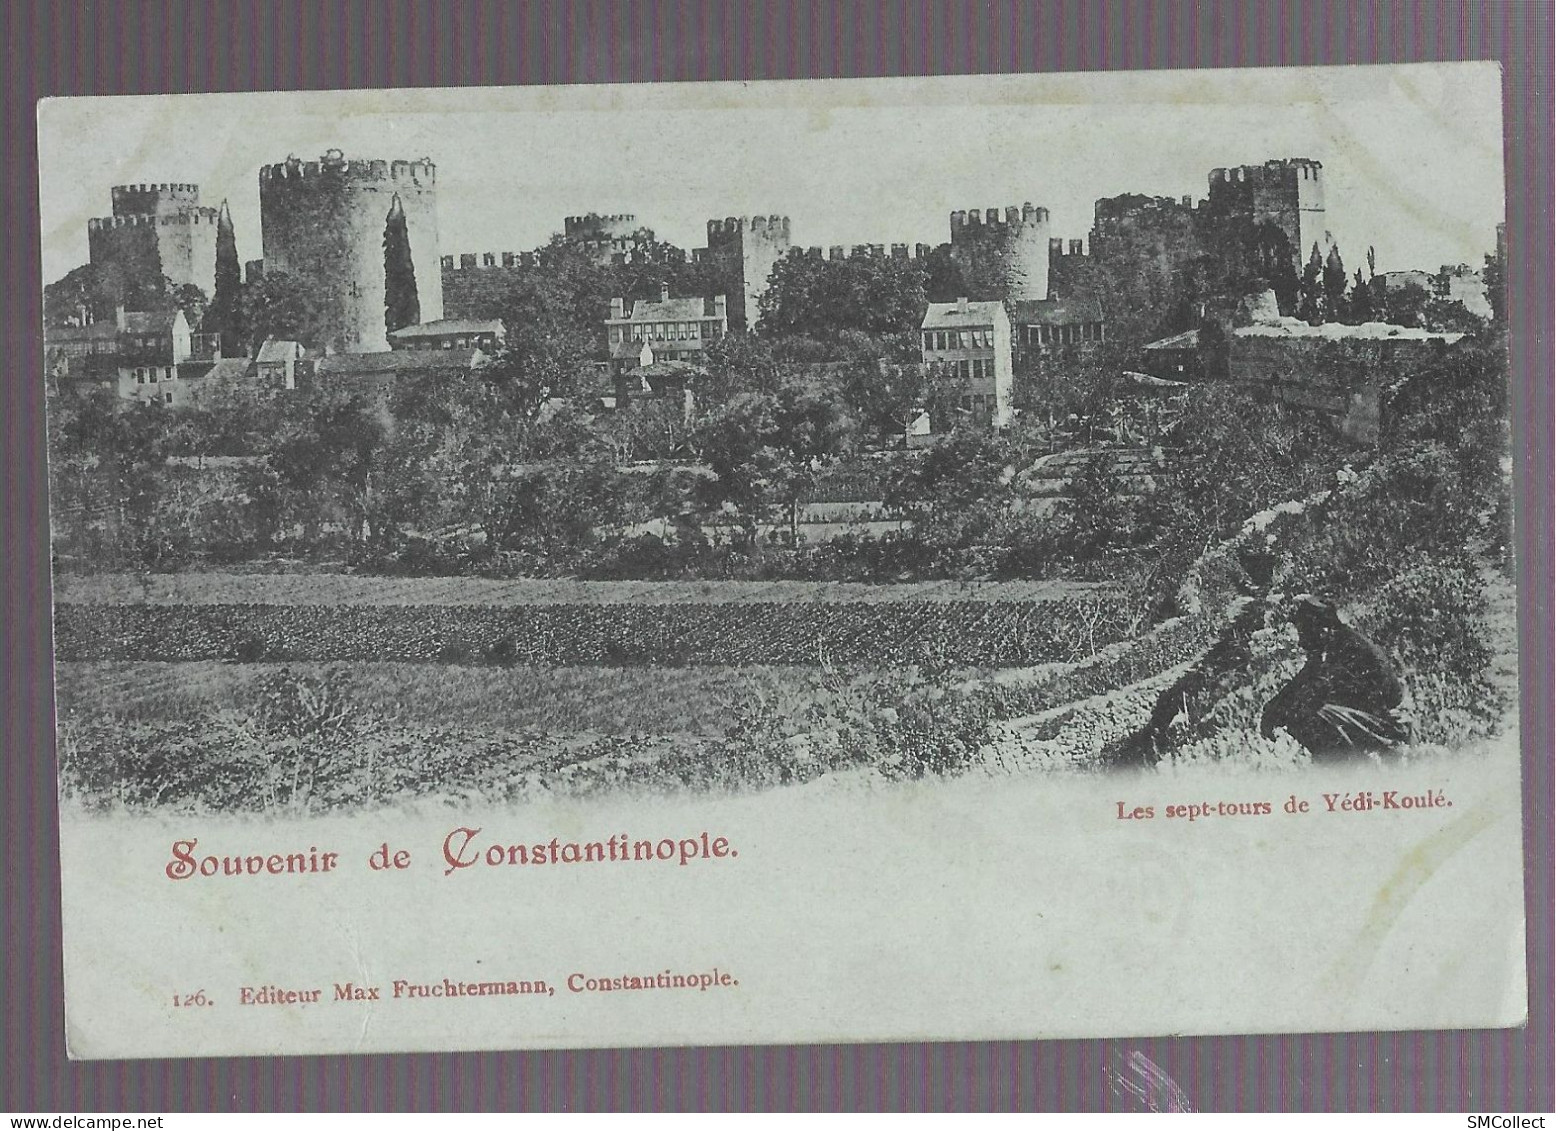 VOIR DESCRIPTION. Souvenir De Constantinople, Les Sept Tours De Yédi-Koulé (9921) - Turchia